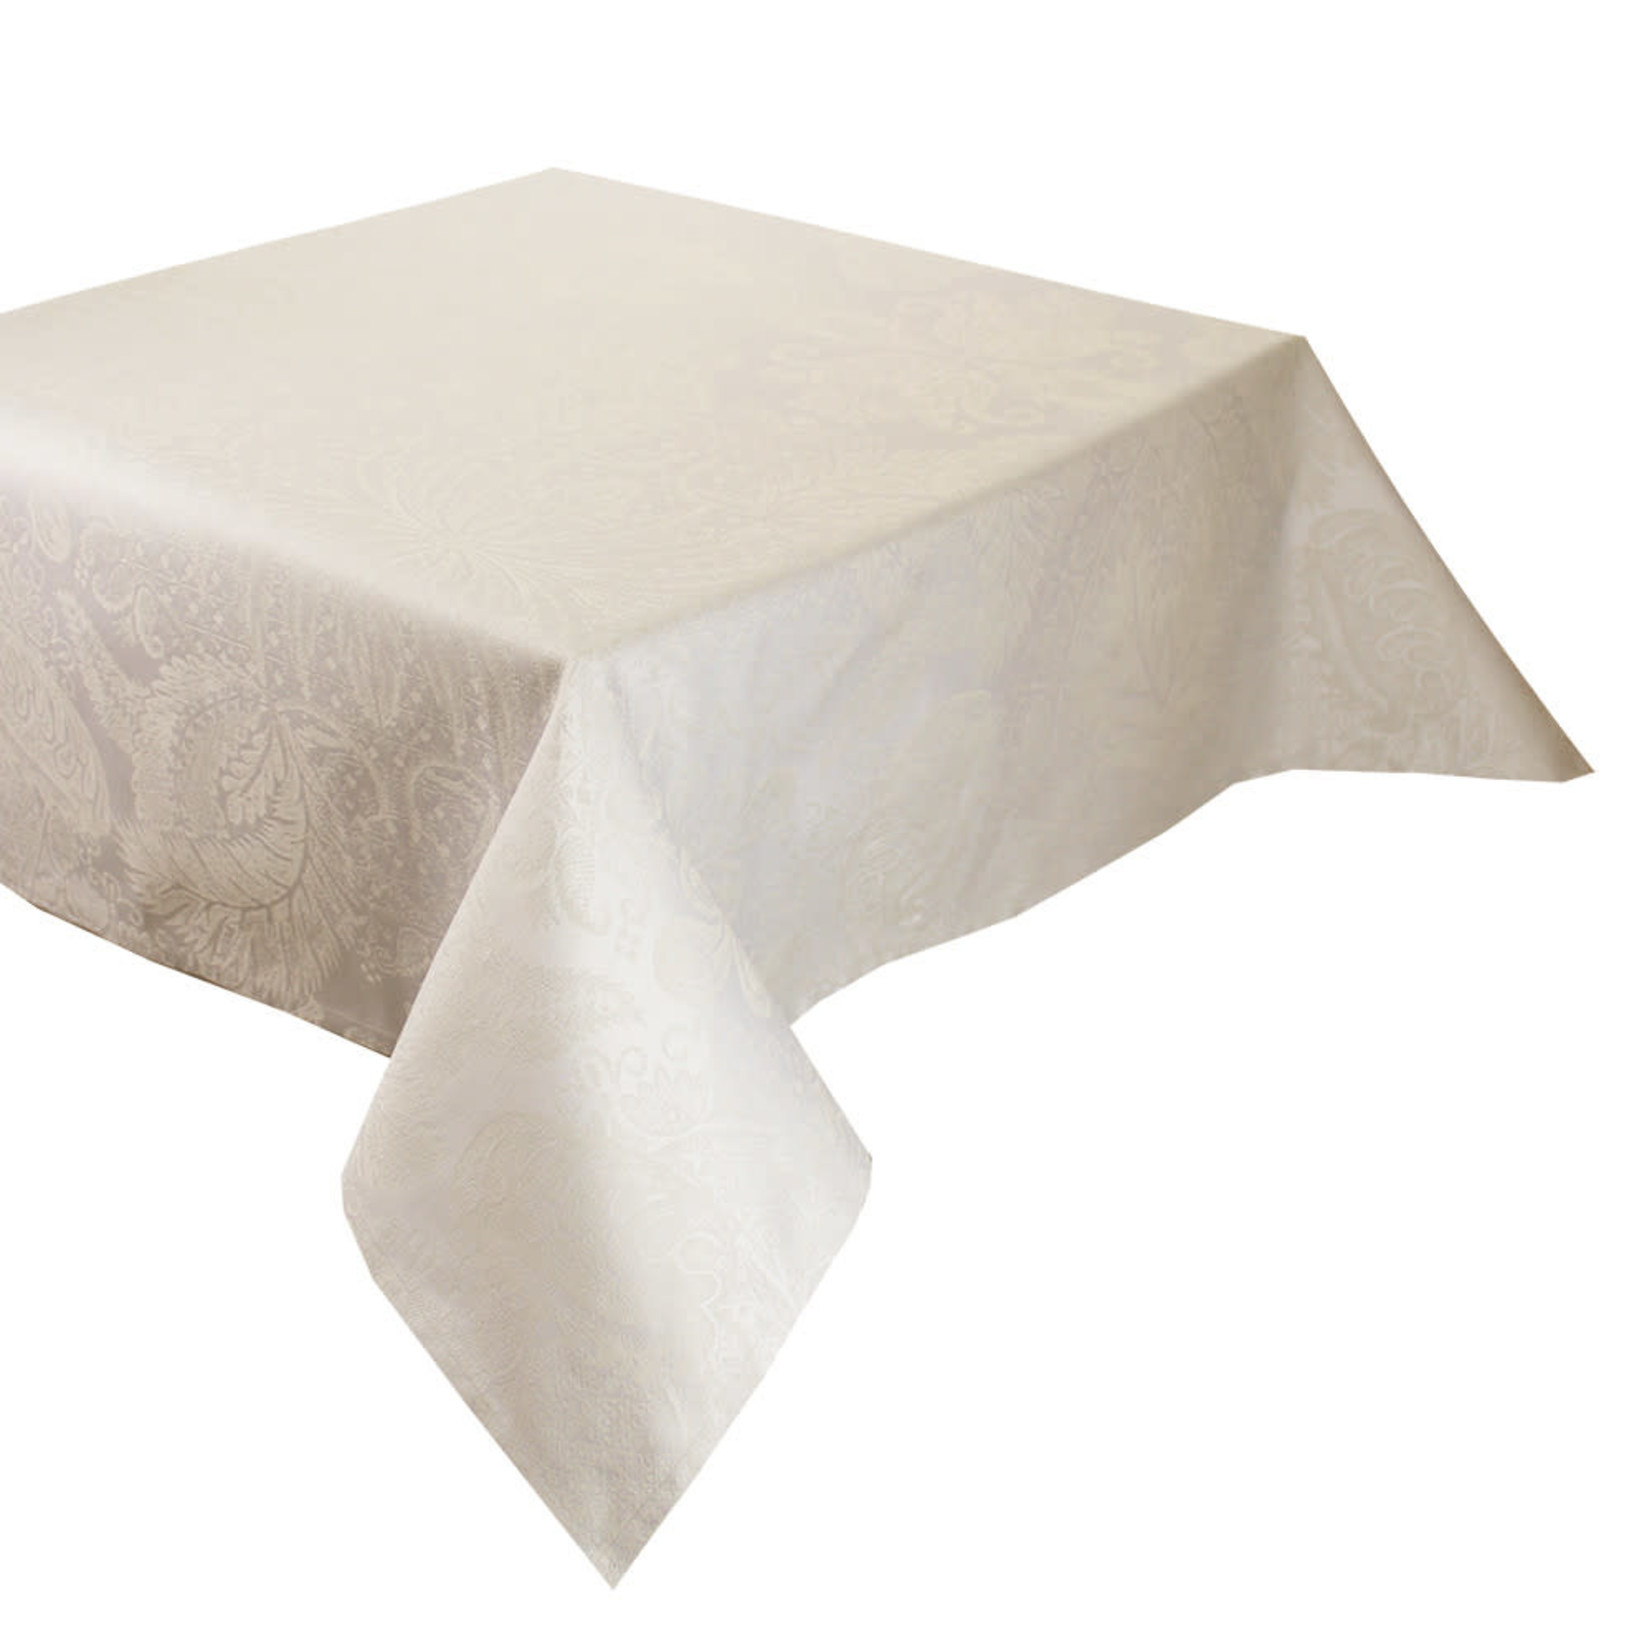 Garnier Thiebaut Mille Isaphire Uni Angelite Tablecloth (69X69)